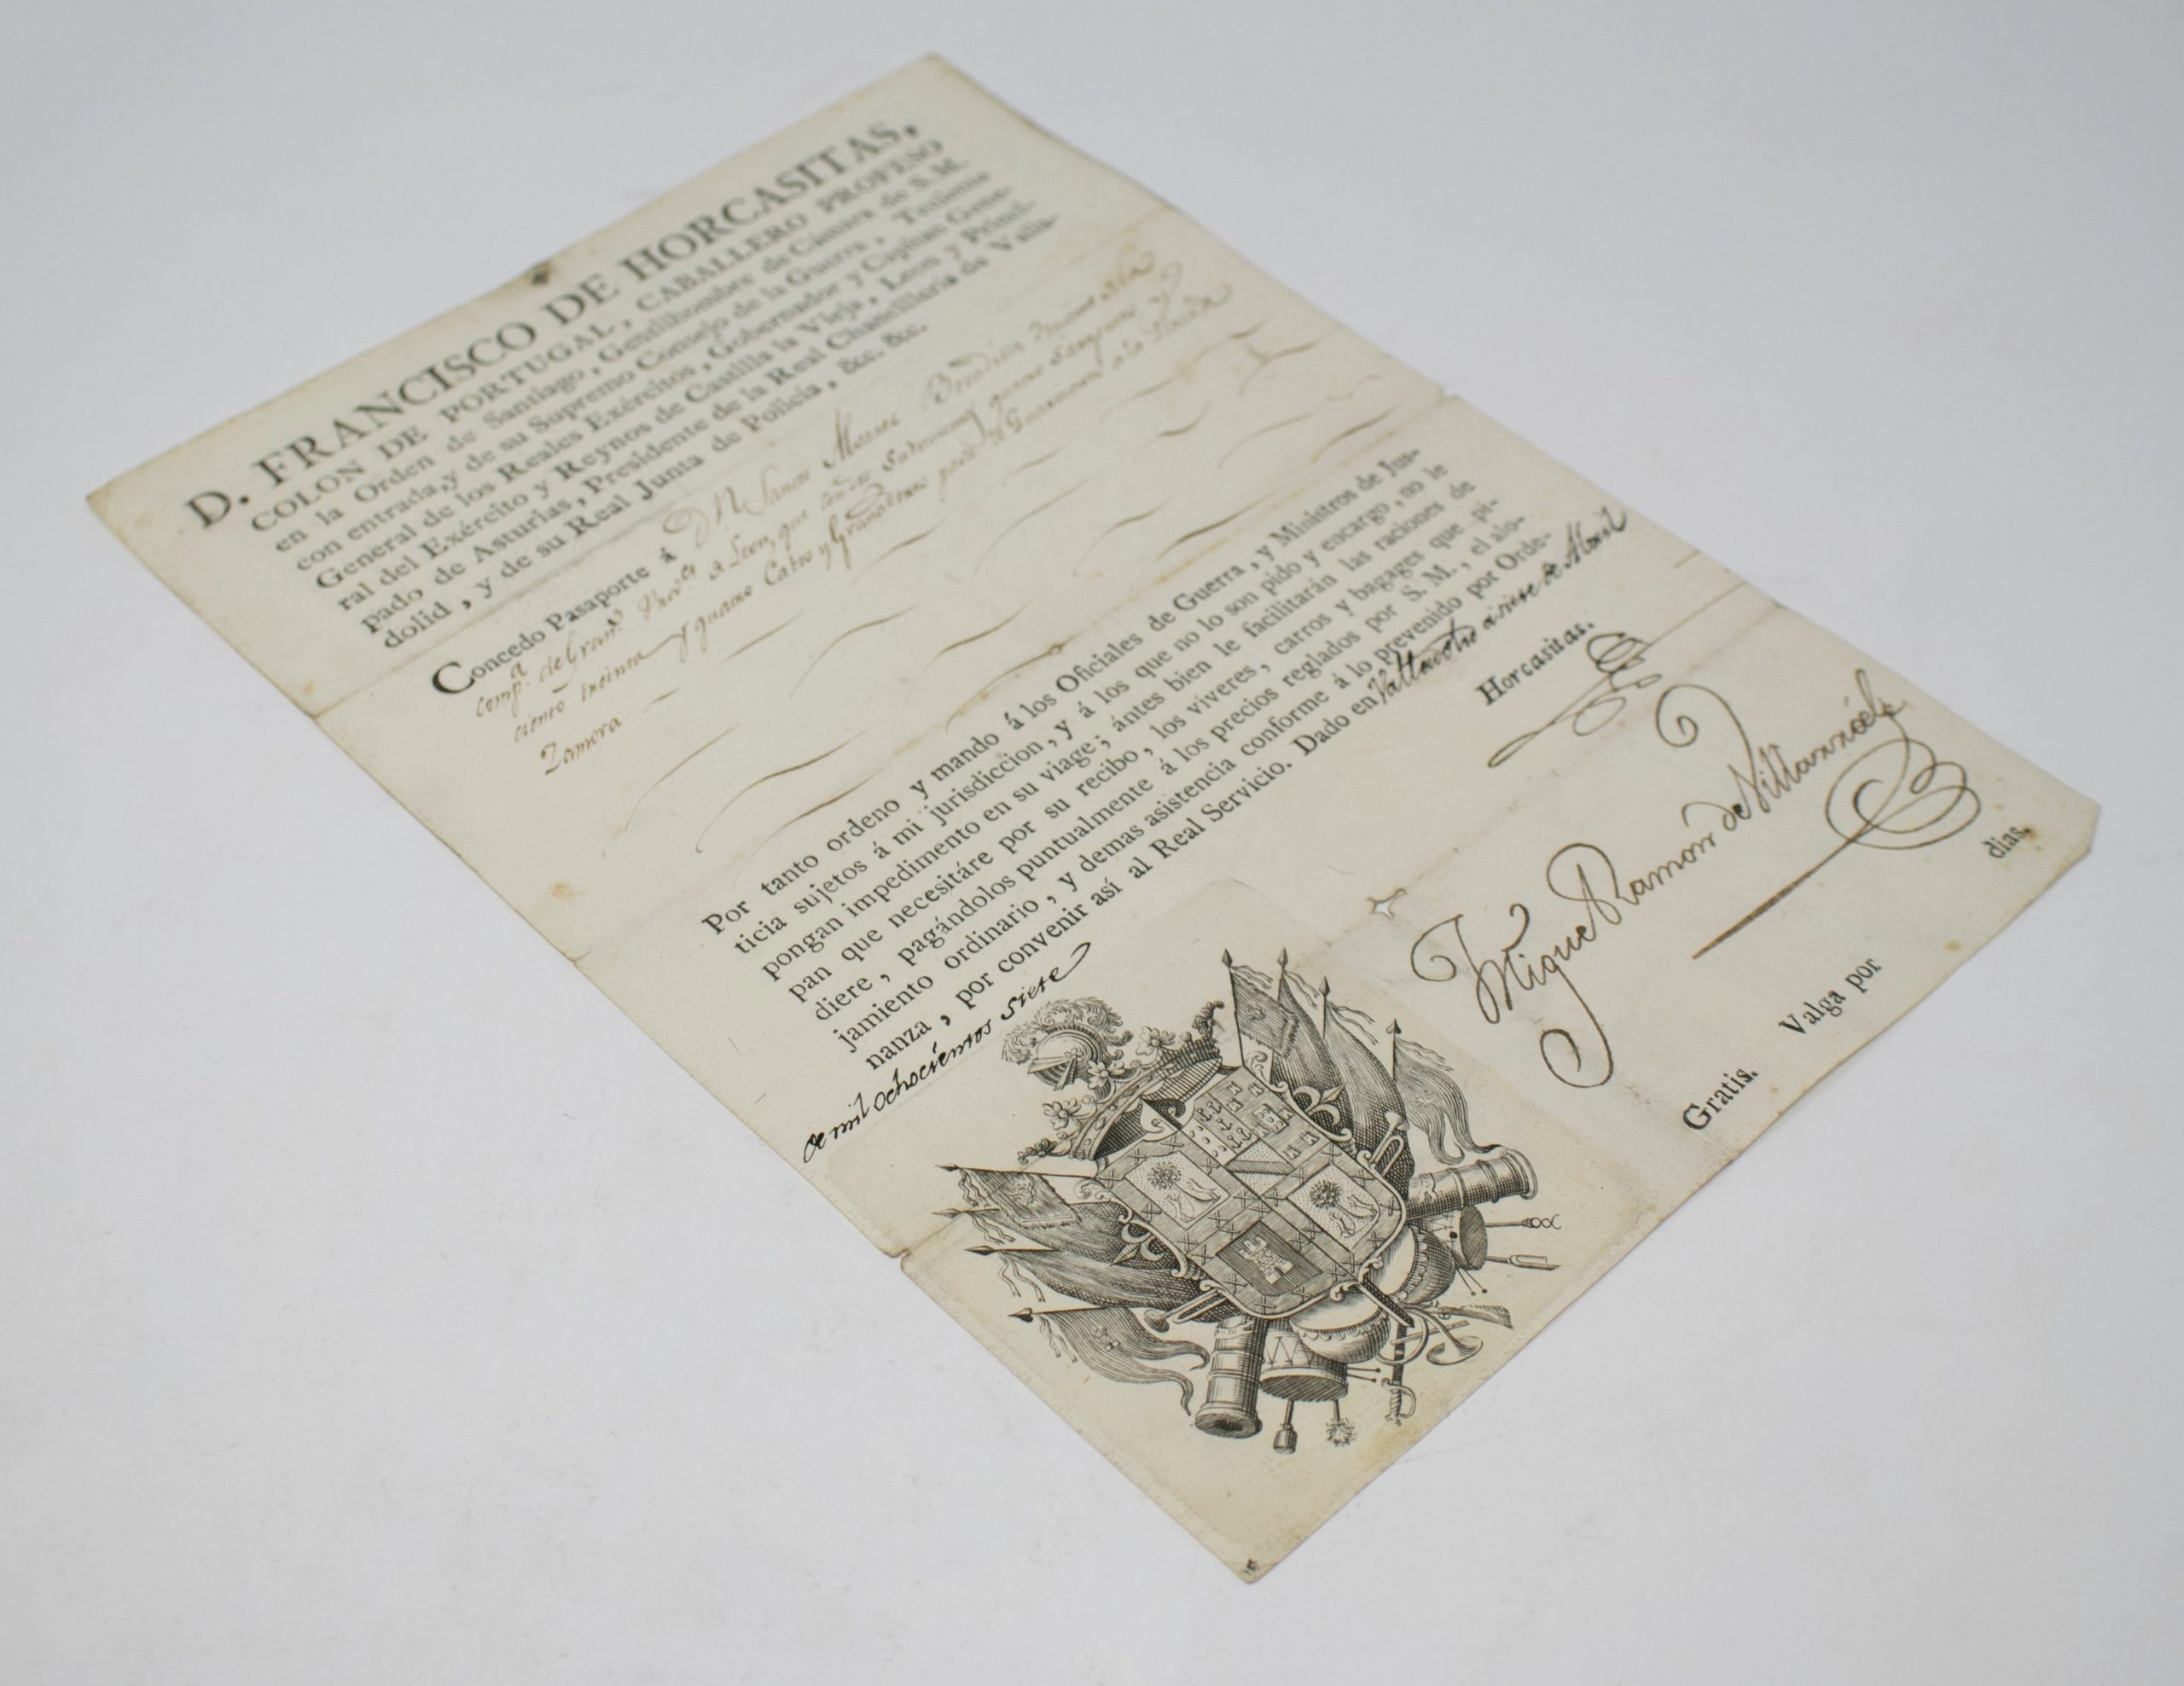 Pasaporte Español Escrito a Mano en Papel, Correspondiente al Año 1815